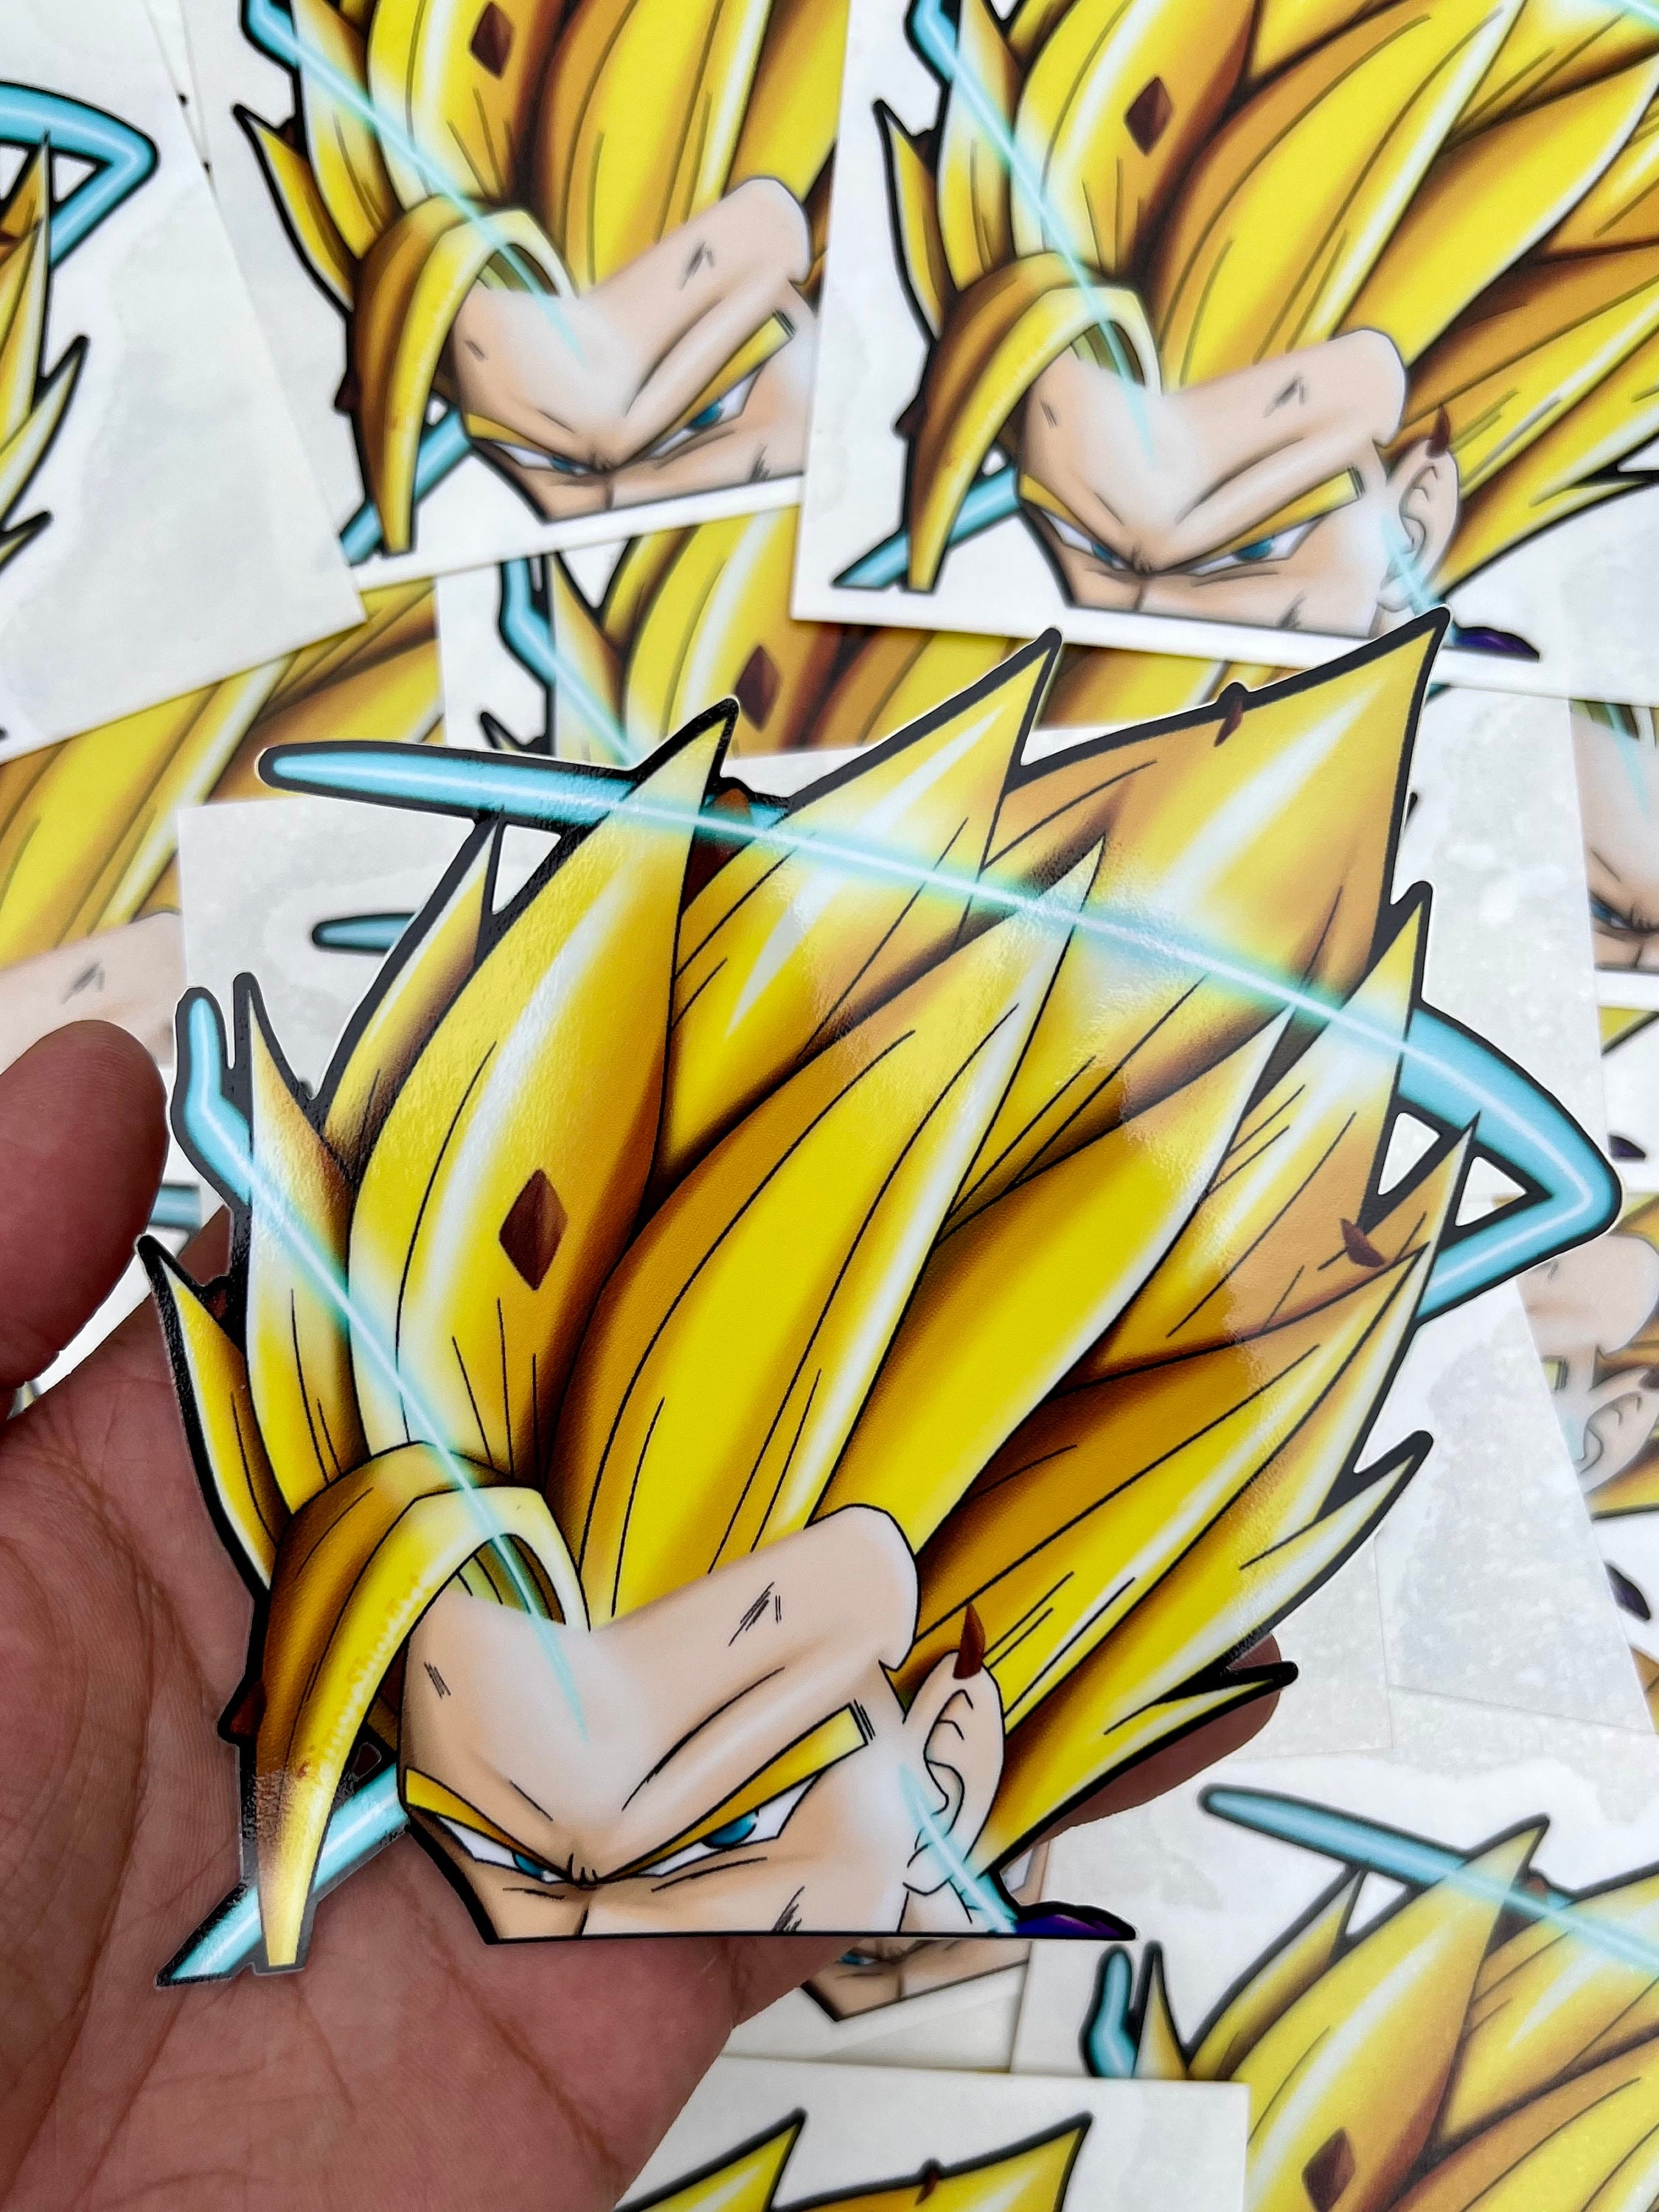 Anime Dragon Ball Z Super Saiyan Goku 3 Faces Decor Art Decal